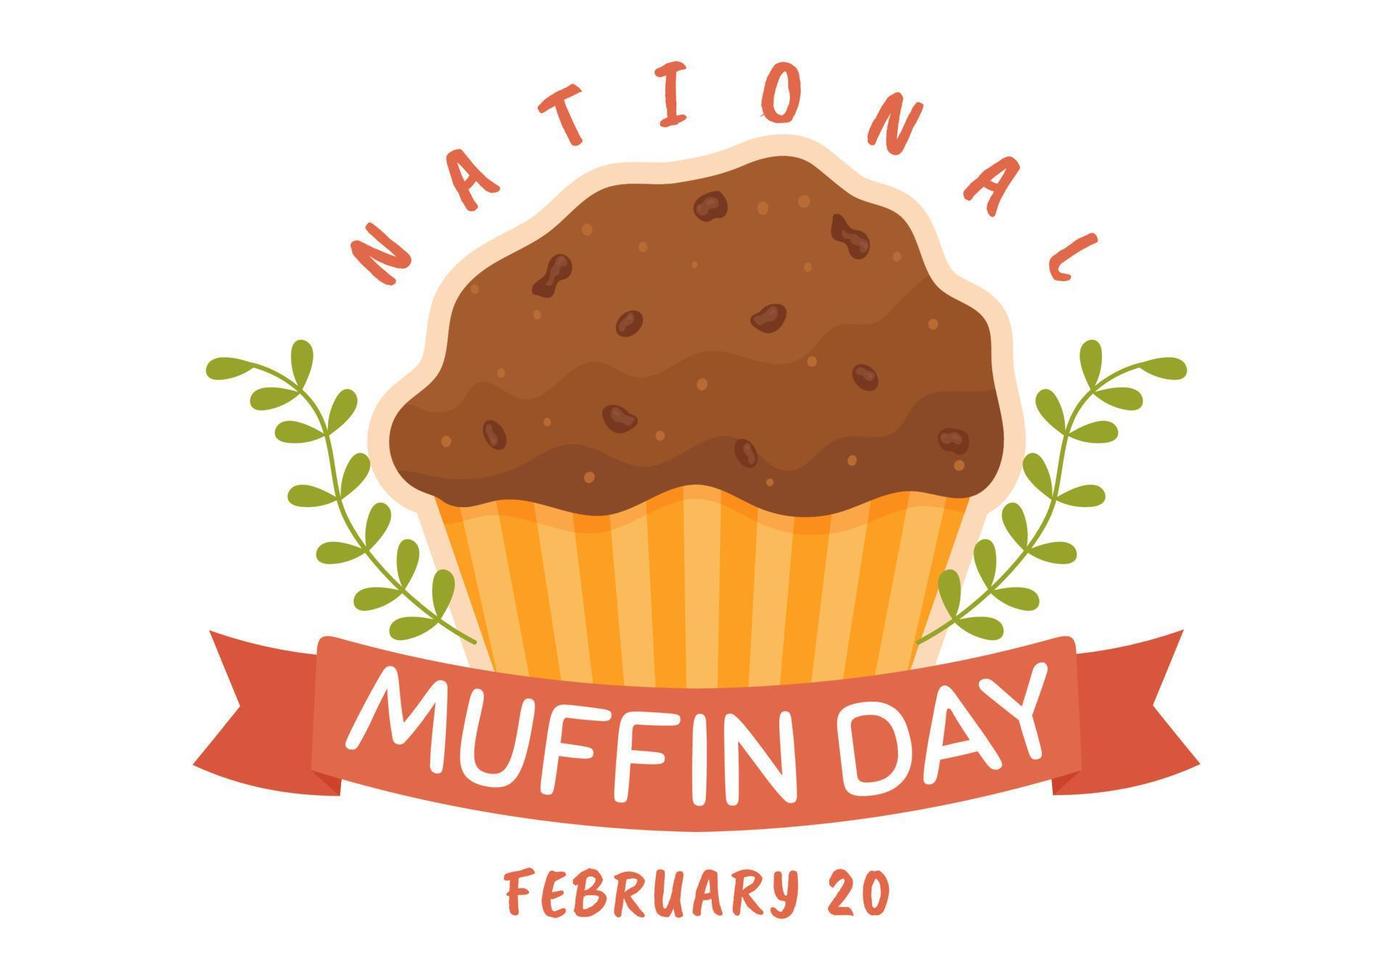 journée nationale des muffins le 20 février avec des muffins classiques aux pépites de chocolat délicieux en dessin animé plat illustration de modèle dessiné à la main vecteur